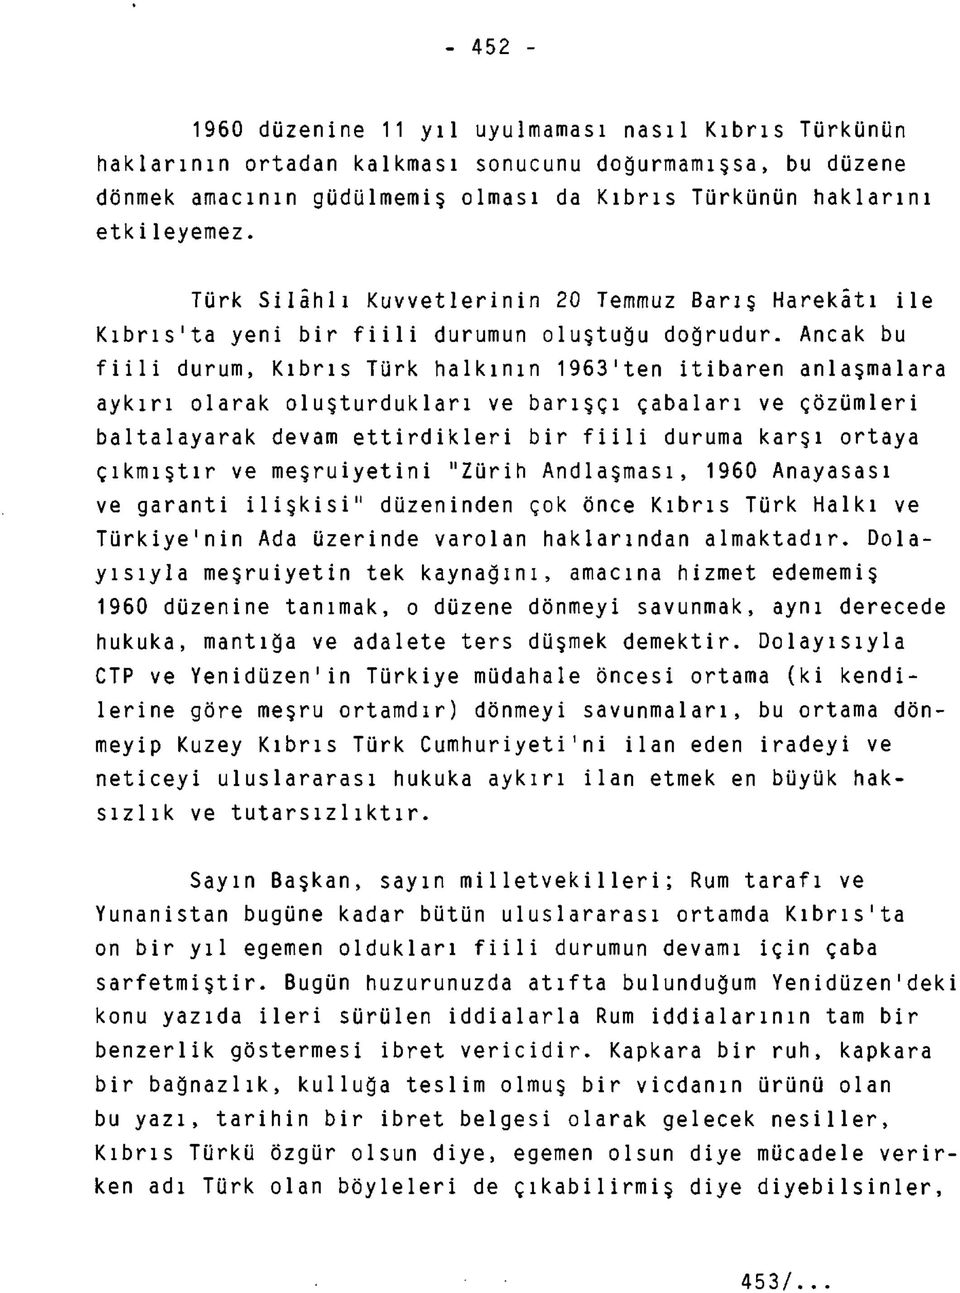 Ancak bu fiili durum, Kıbrıs Türk halkının 1963'ten itibaren anlaşmalara aykırı olarak oluşturdukları ve barışçı çabaları ve çözümleri baltalayarak devam ettirdikleri bir fiili duruma karşı ortaya